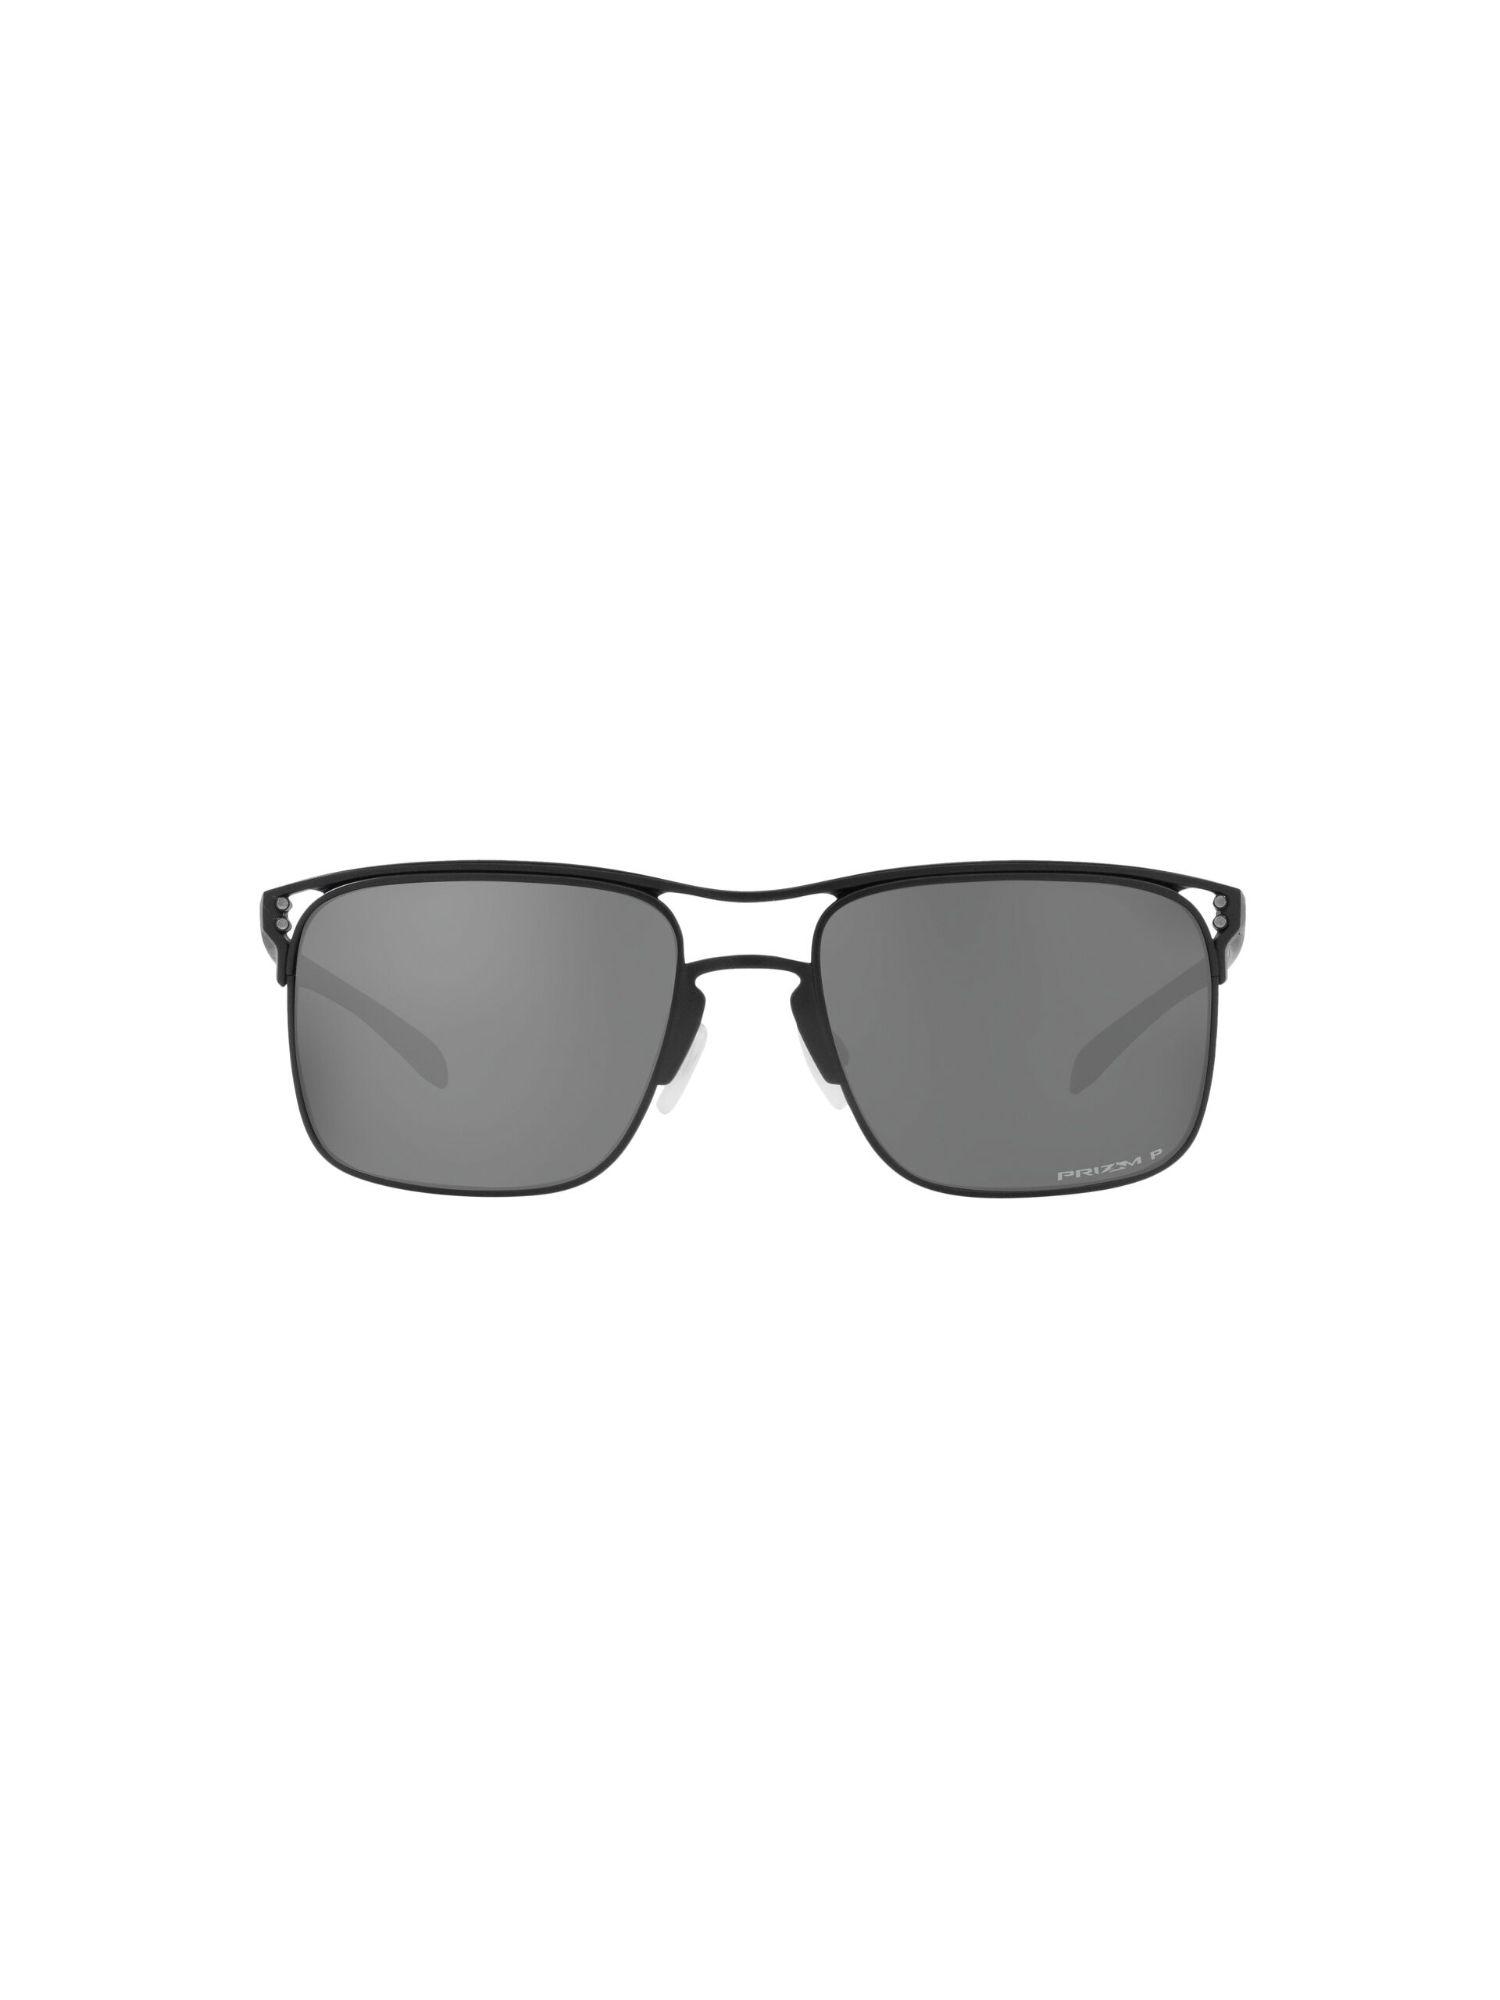 Polarised Grey Square Men Sunglasses (57)